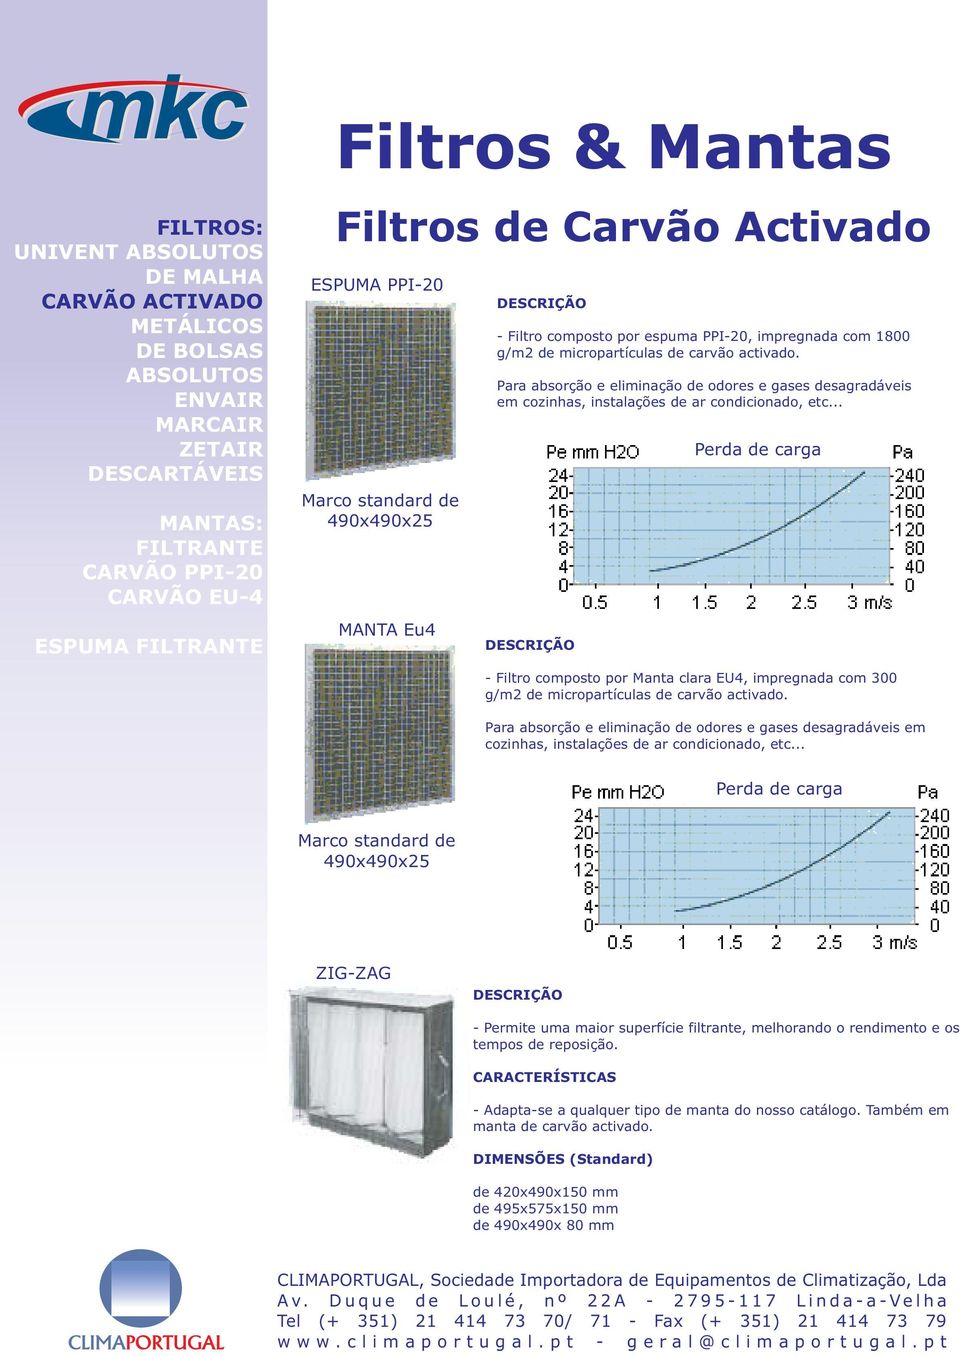 .. DESCRIÇÃO - Filtro composto por Manta clara EU4, impregnada com 300 g/m2 de micropartículas de carvão activado.